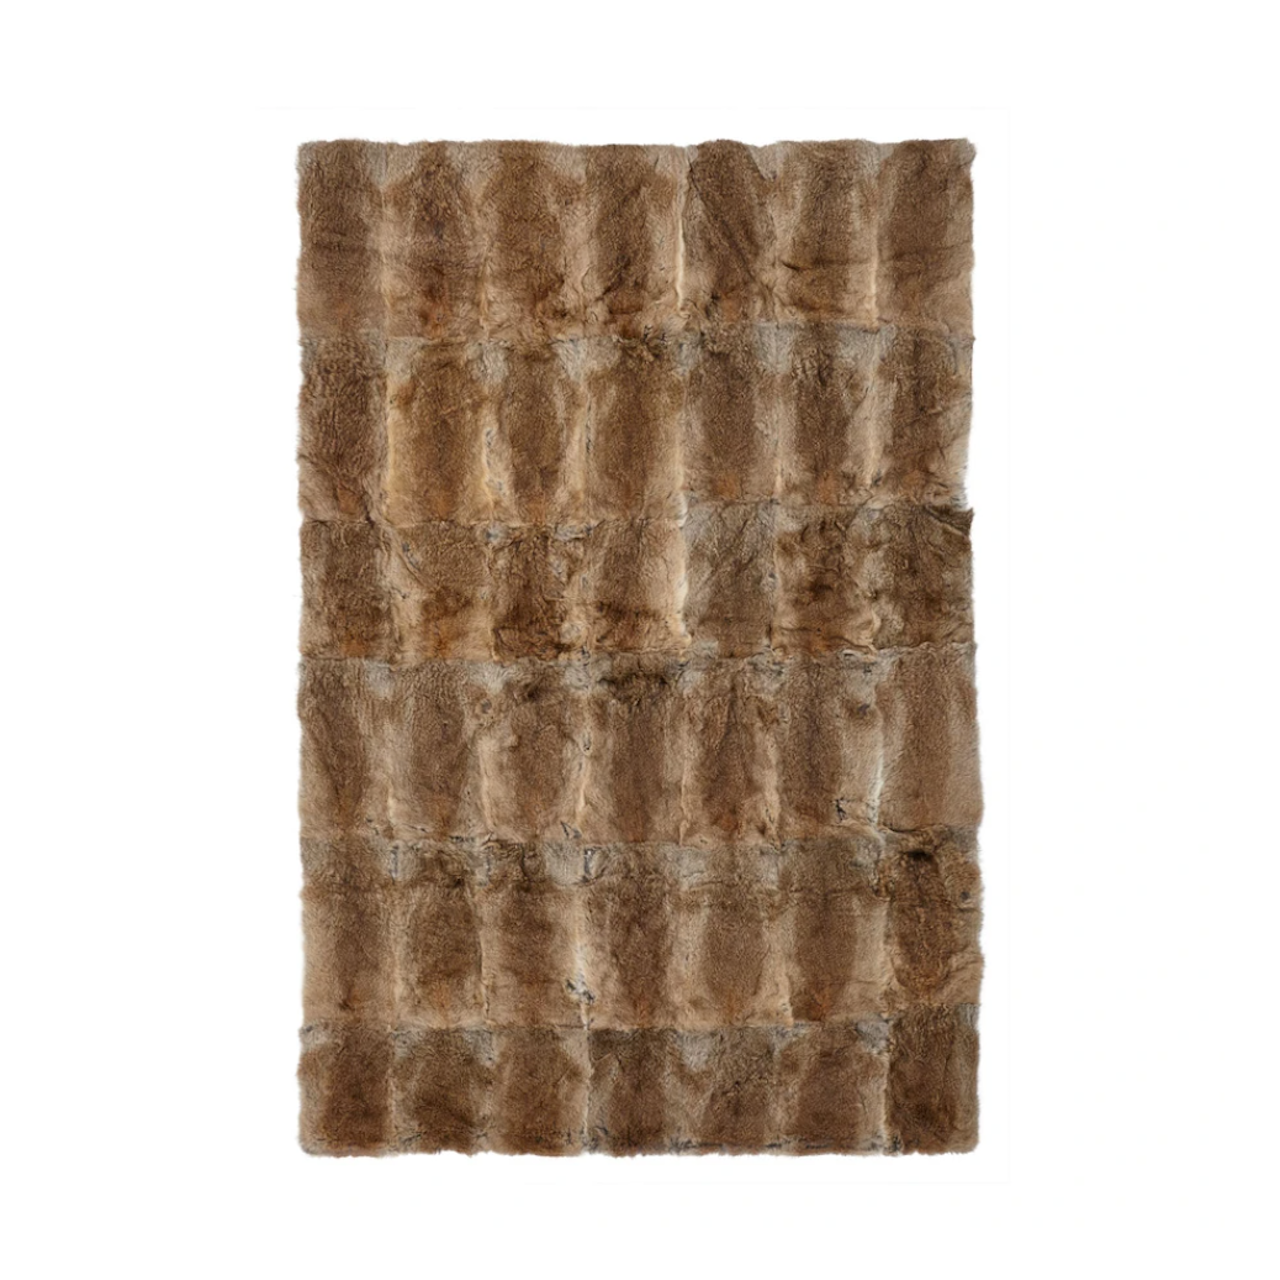 Tagesdecke oder Plaid aus Pelz von NATURES, 120x180